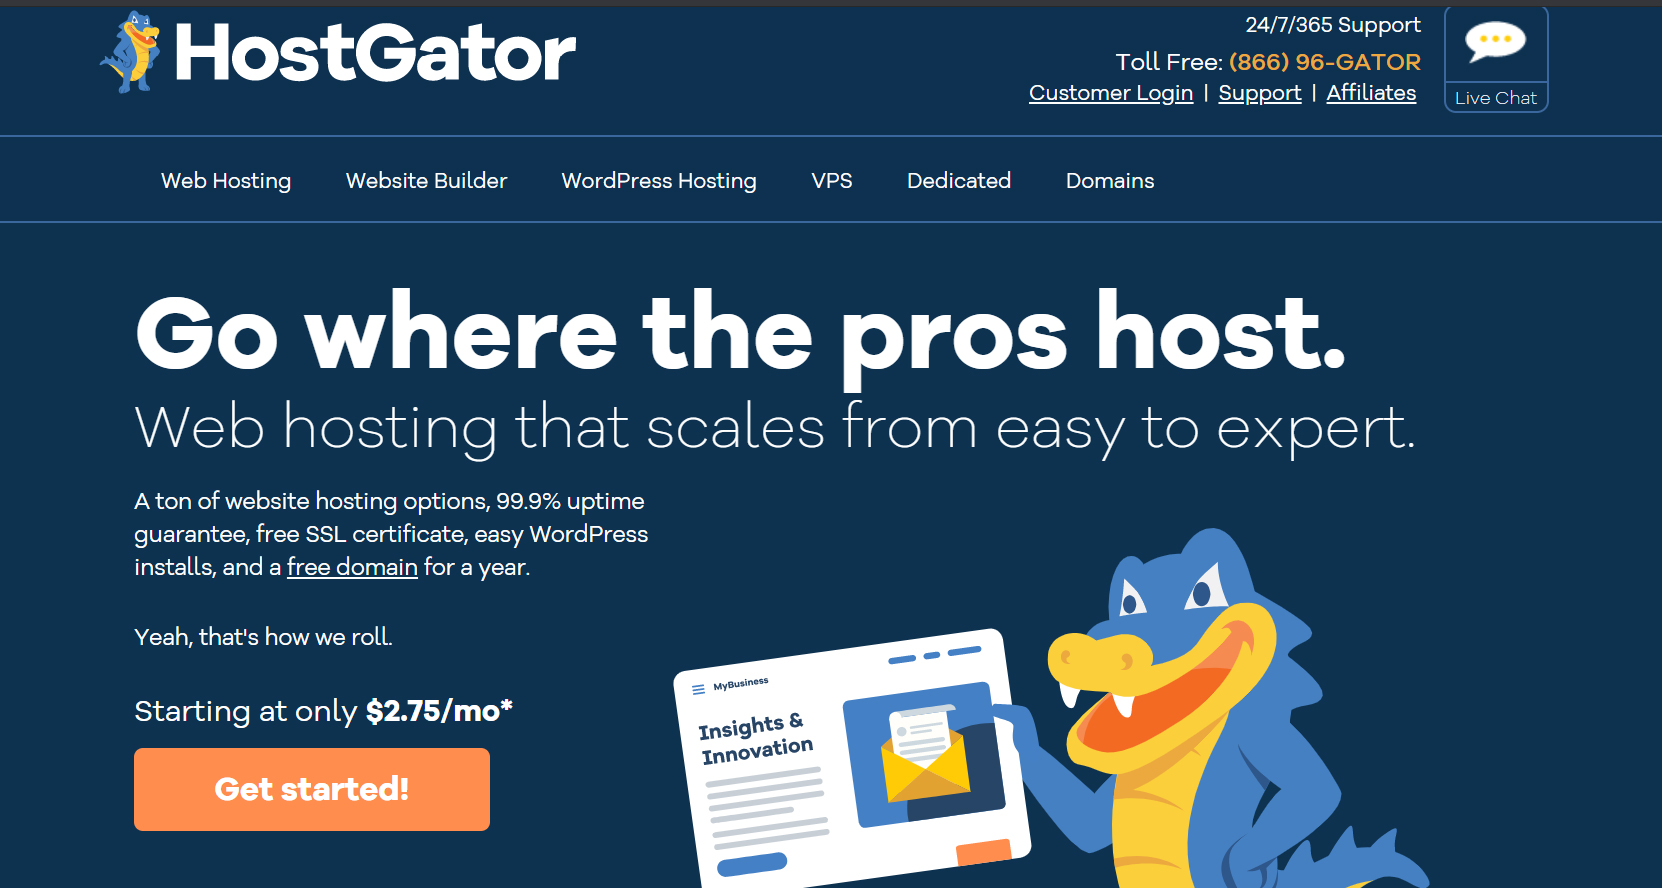 Cómo instalar WordPress en la imagen del artículo de HostGator